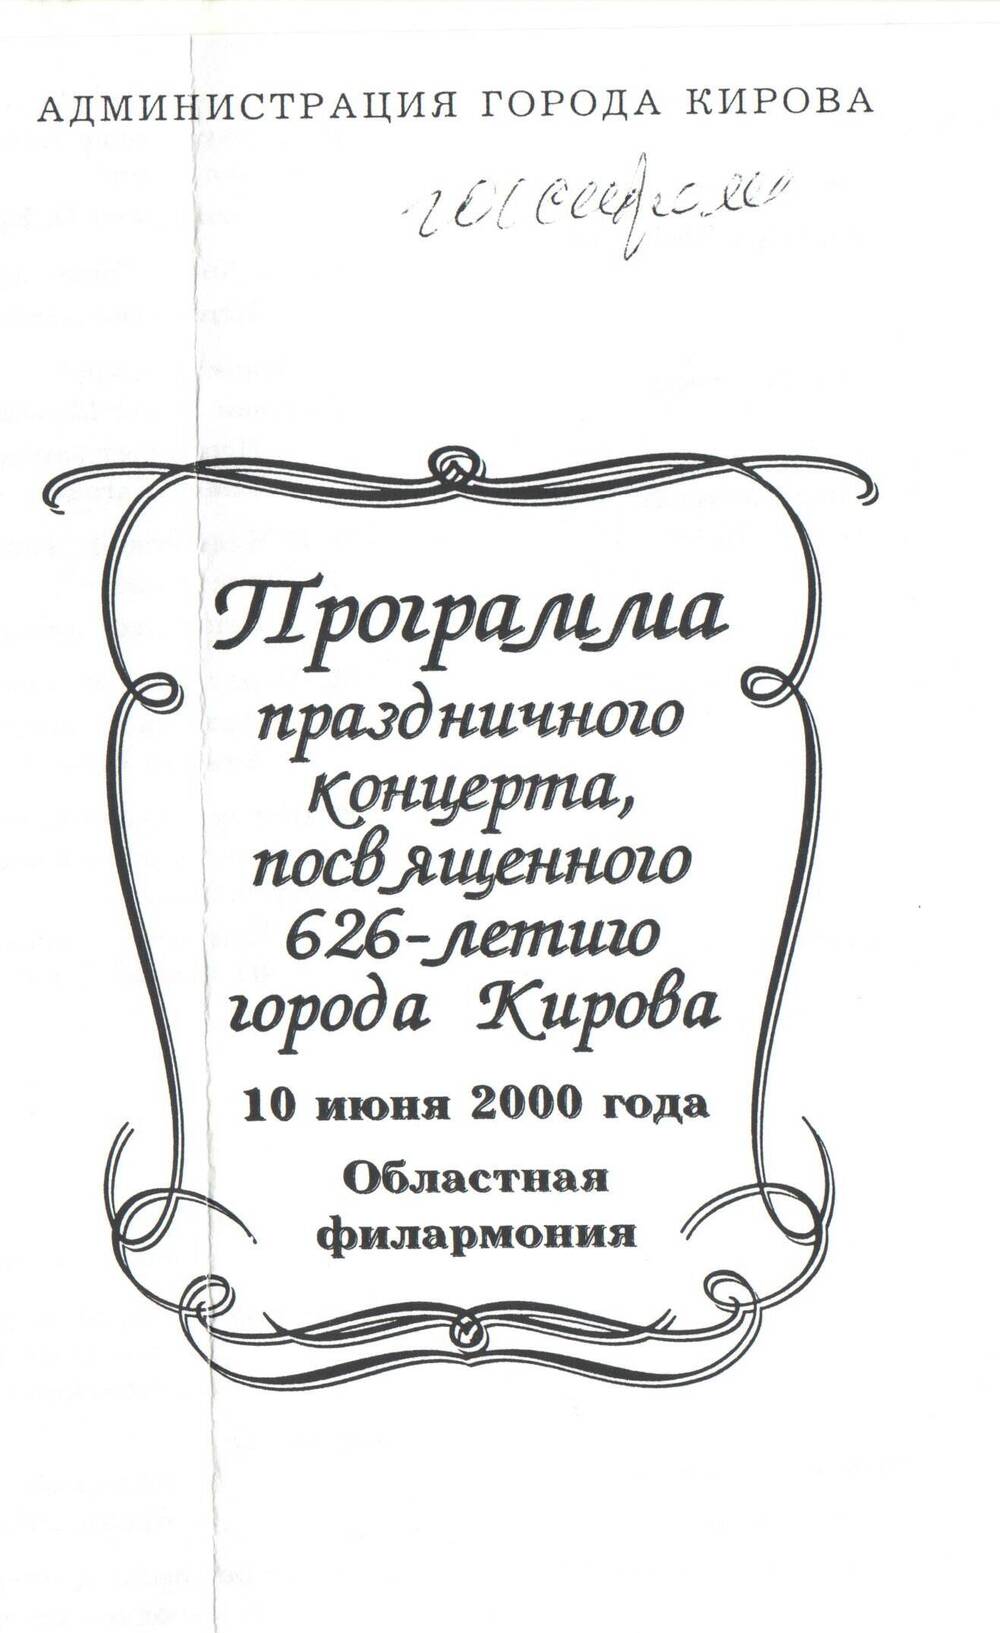 Программа праздничного концерта, посвященного 626-летию города Кирова